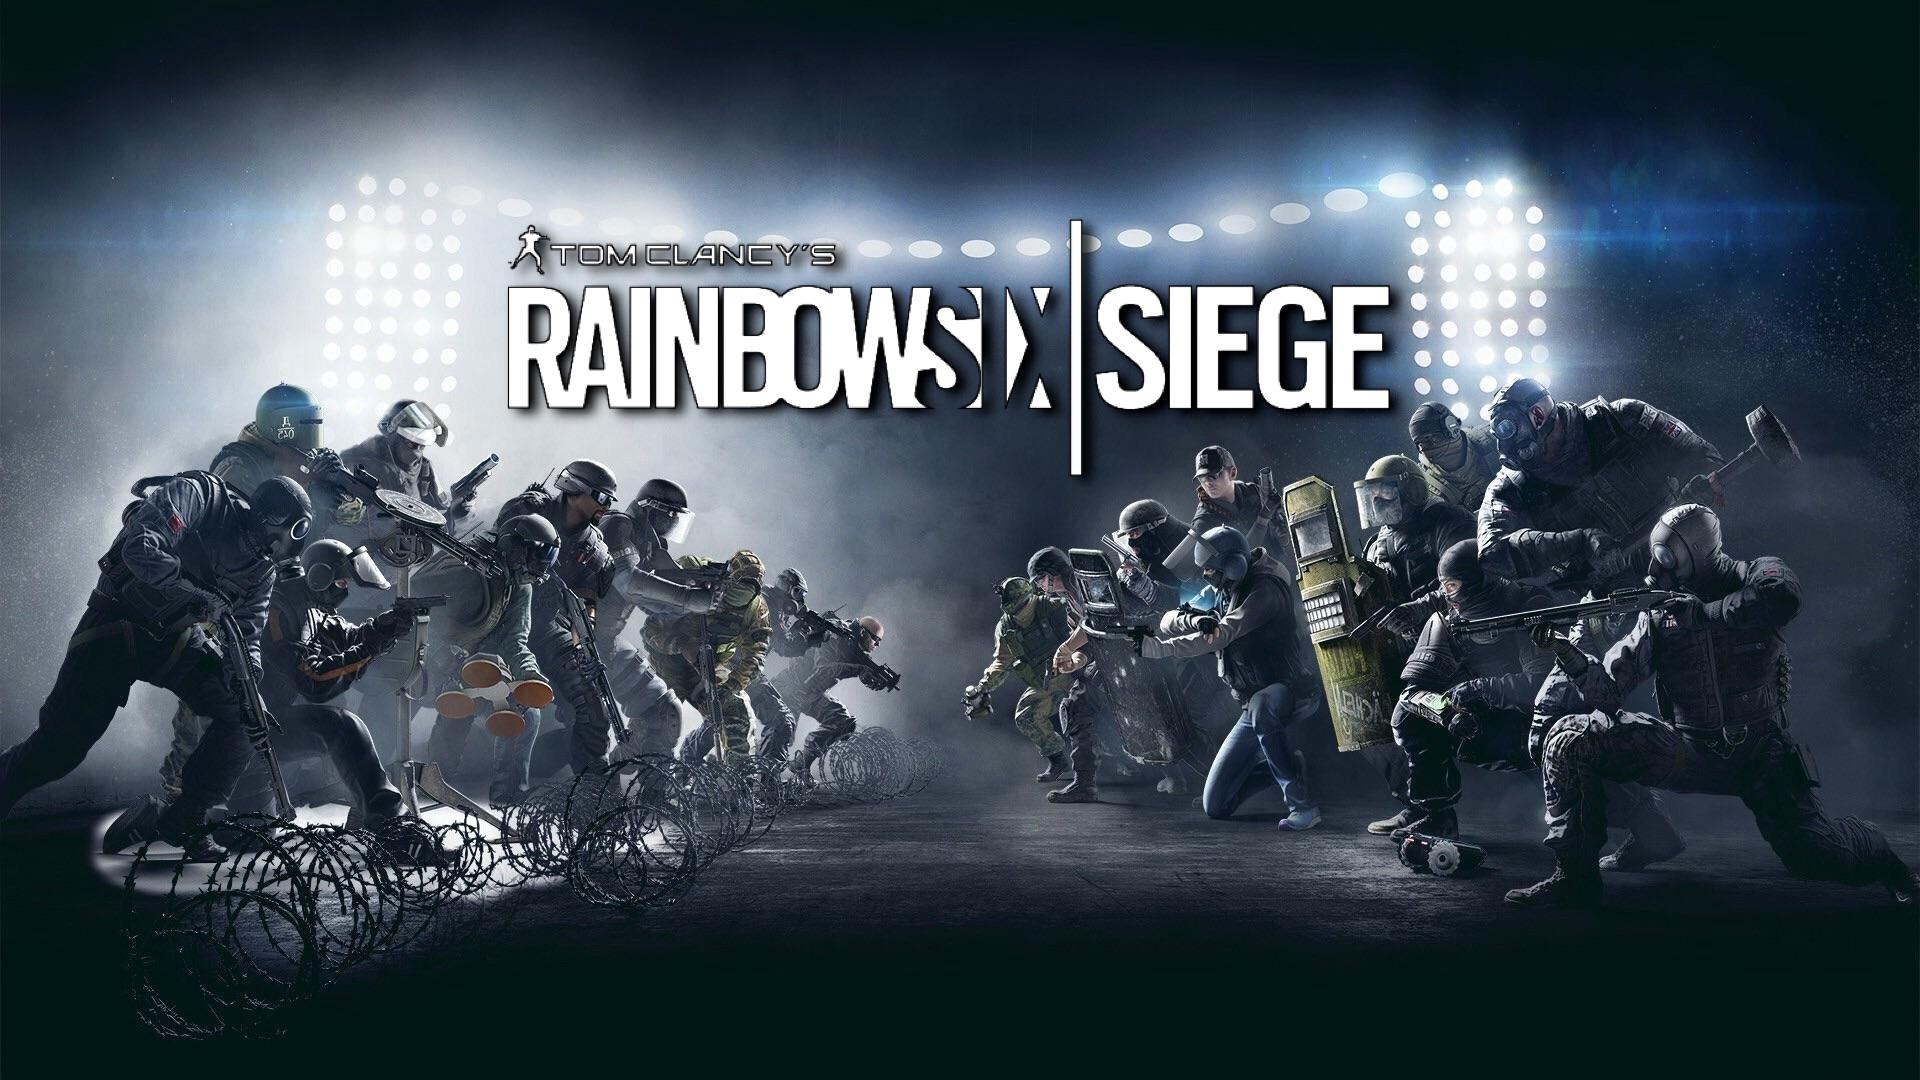 Rainbow Six setge